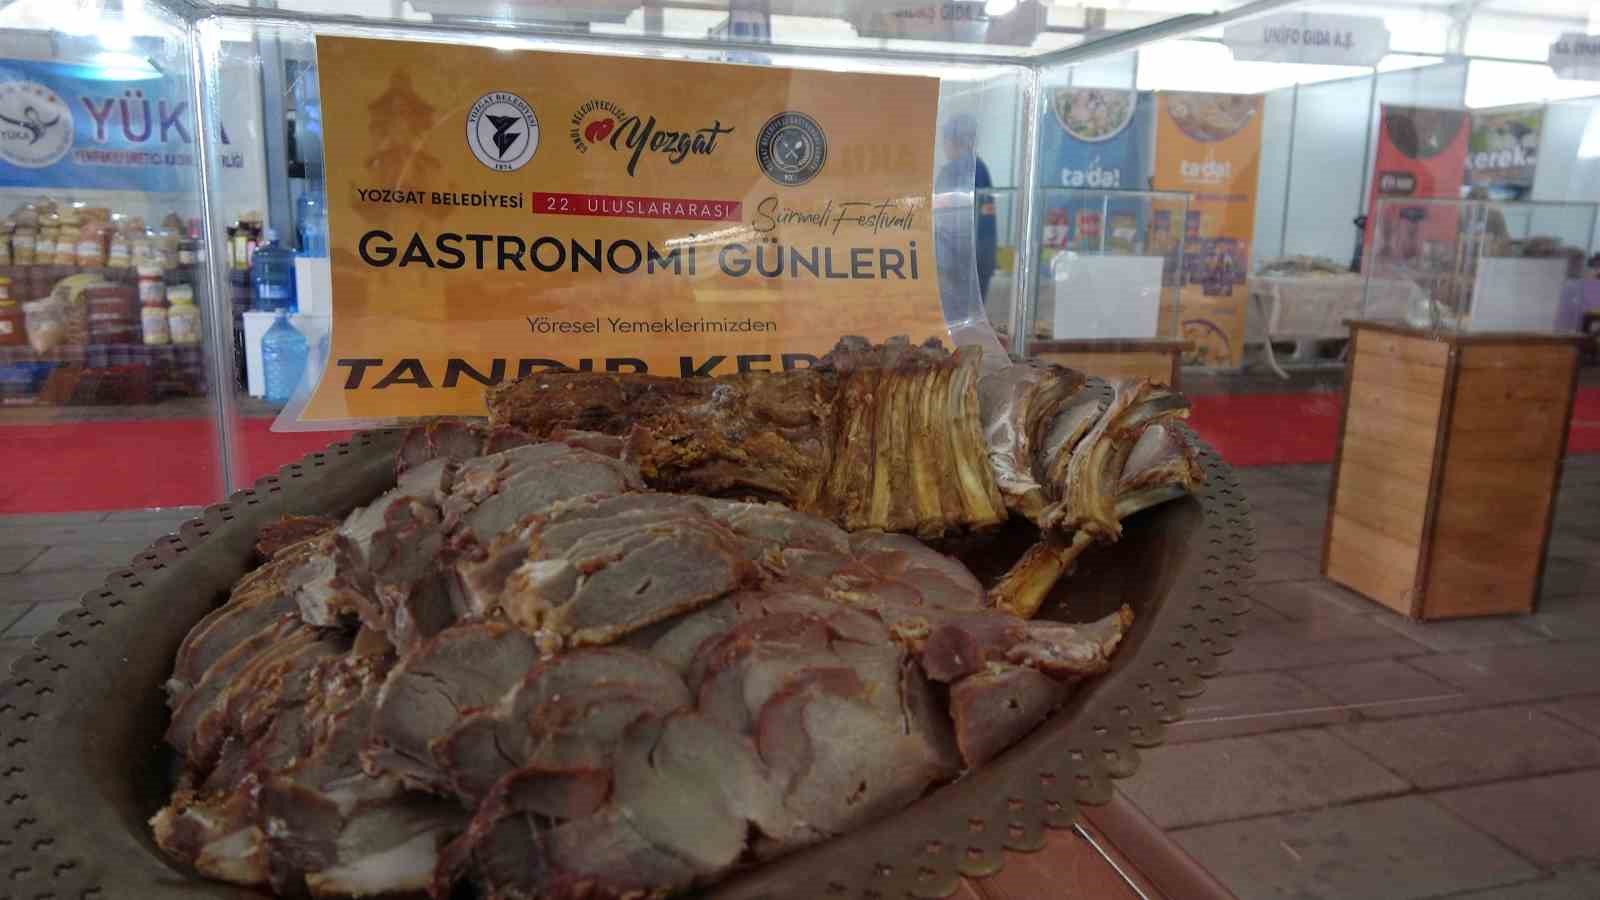 Yozgat Gastronomi Günleri tamamlandı
